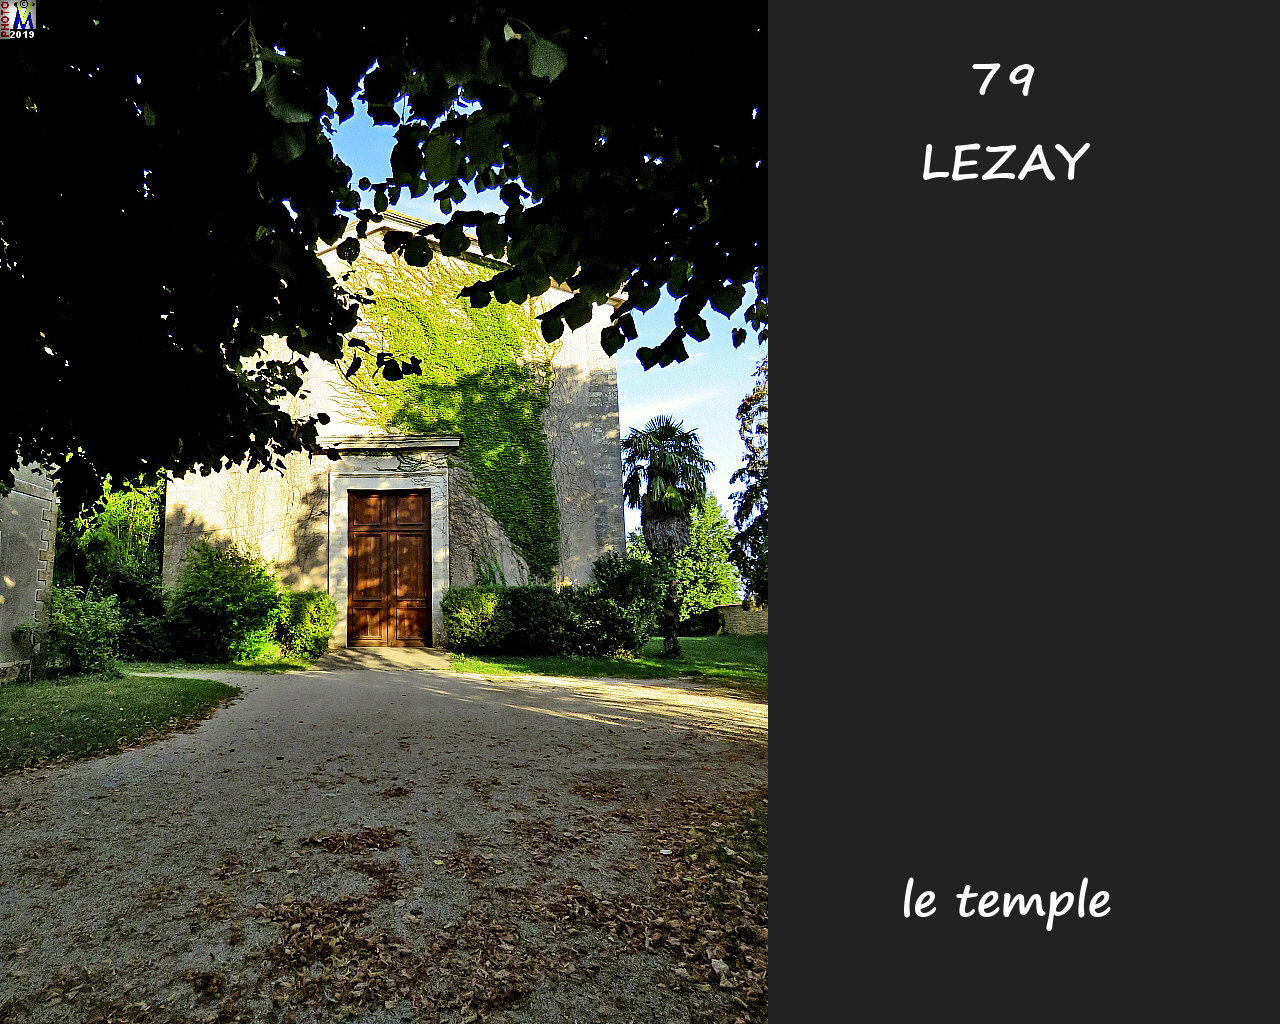 79LEZAY_temple_100.jpg